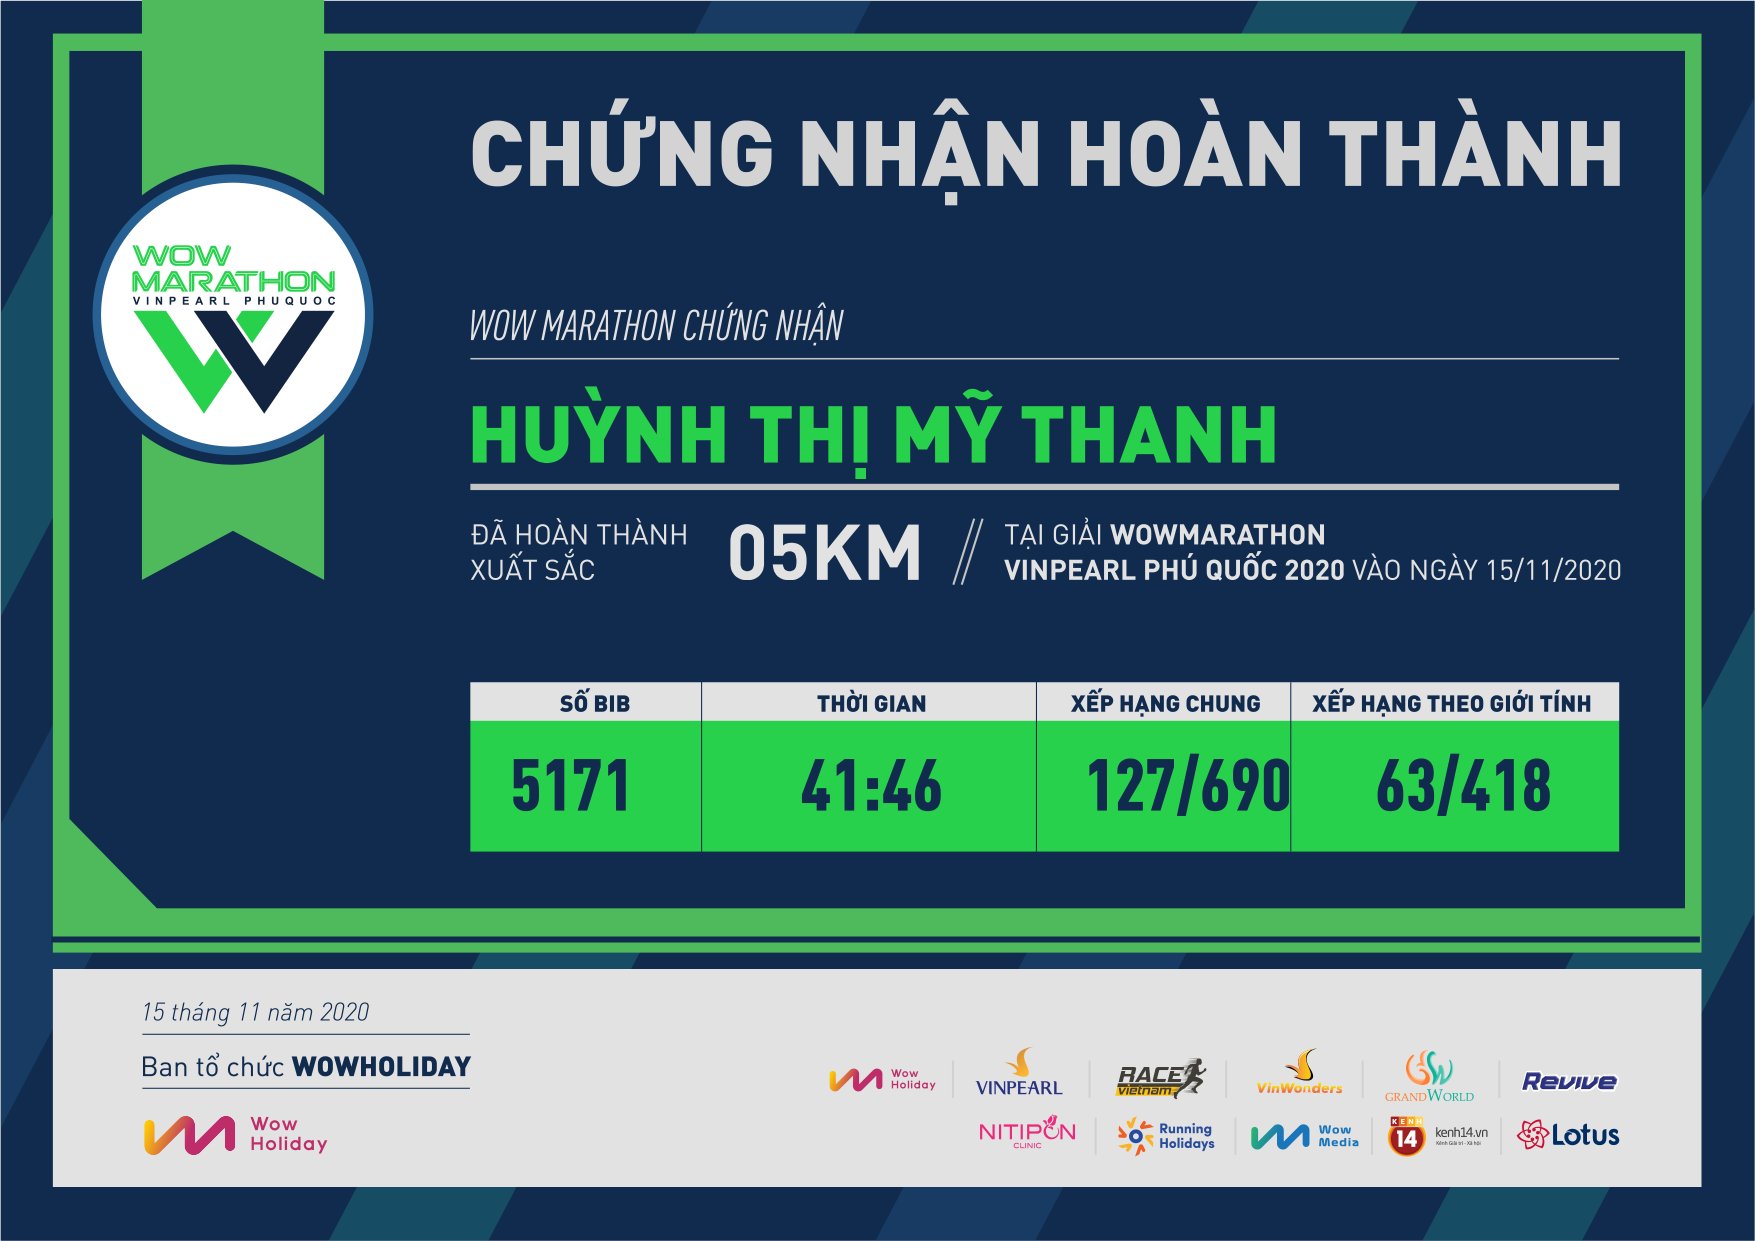 5171 - Huỳnh Thị Mỹ Thanh